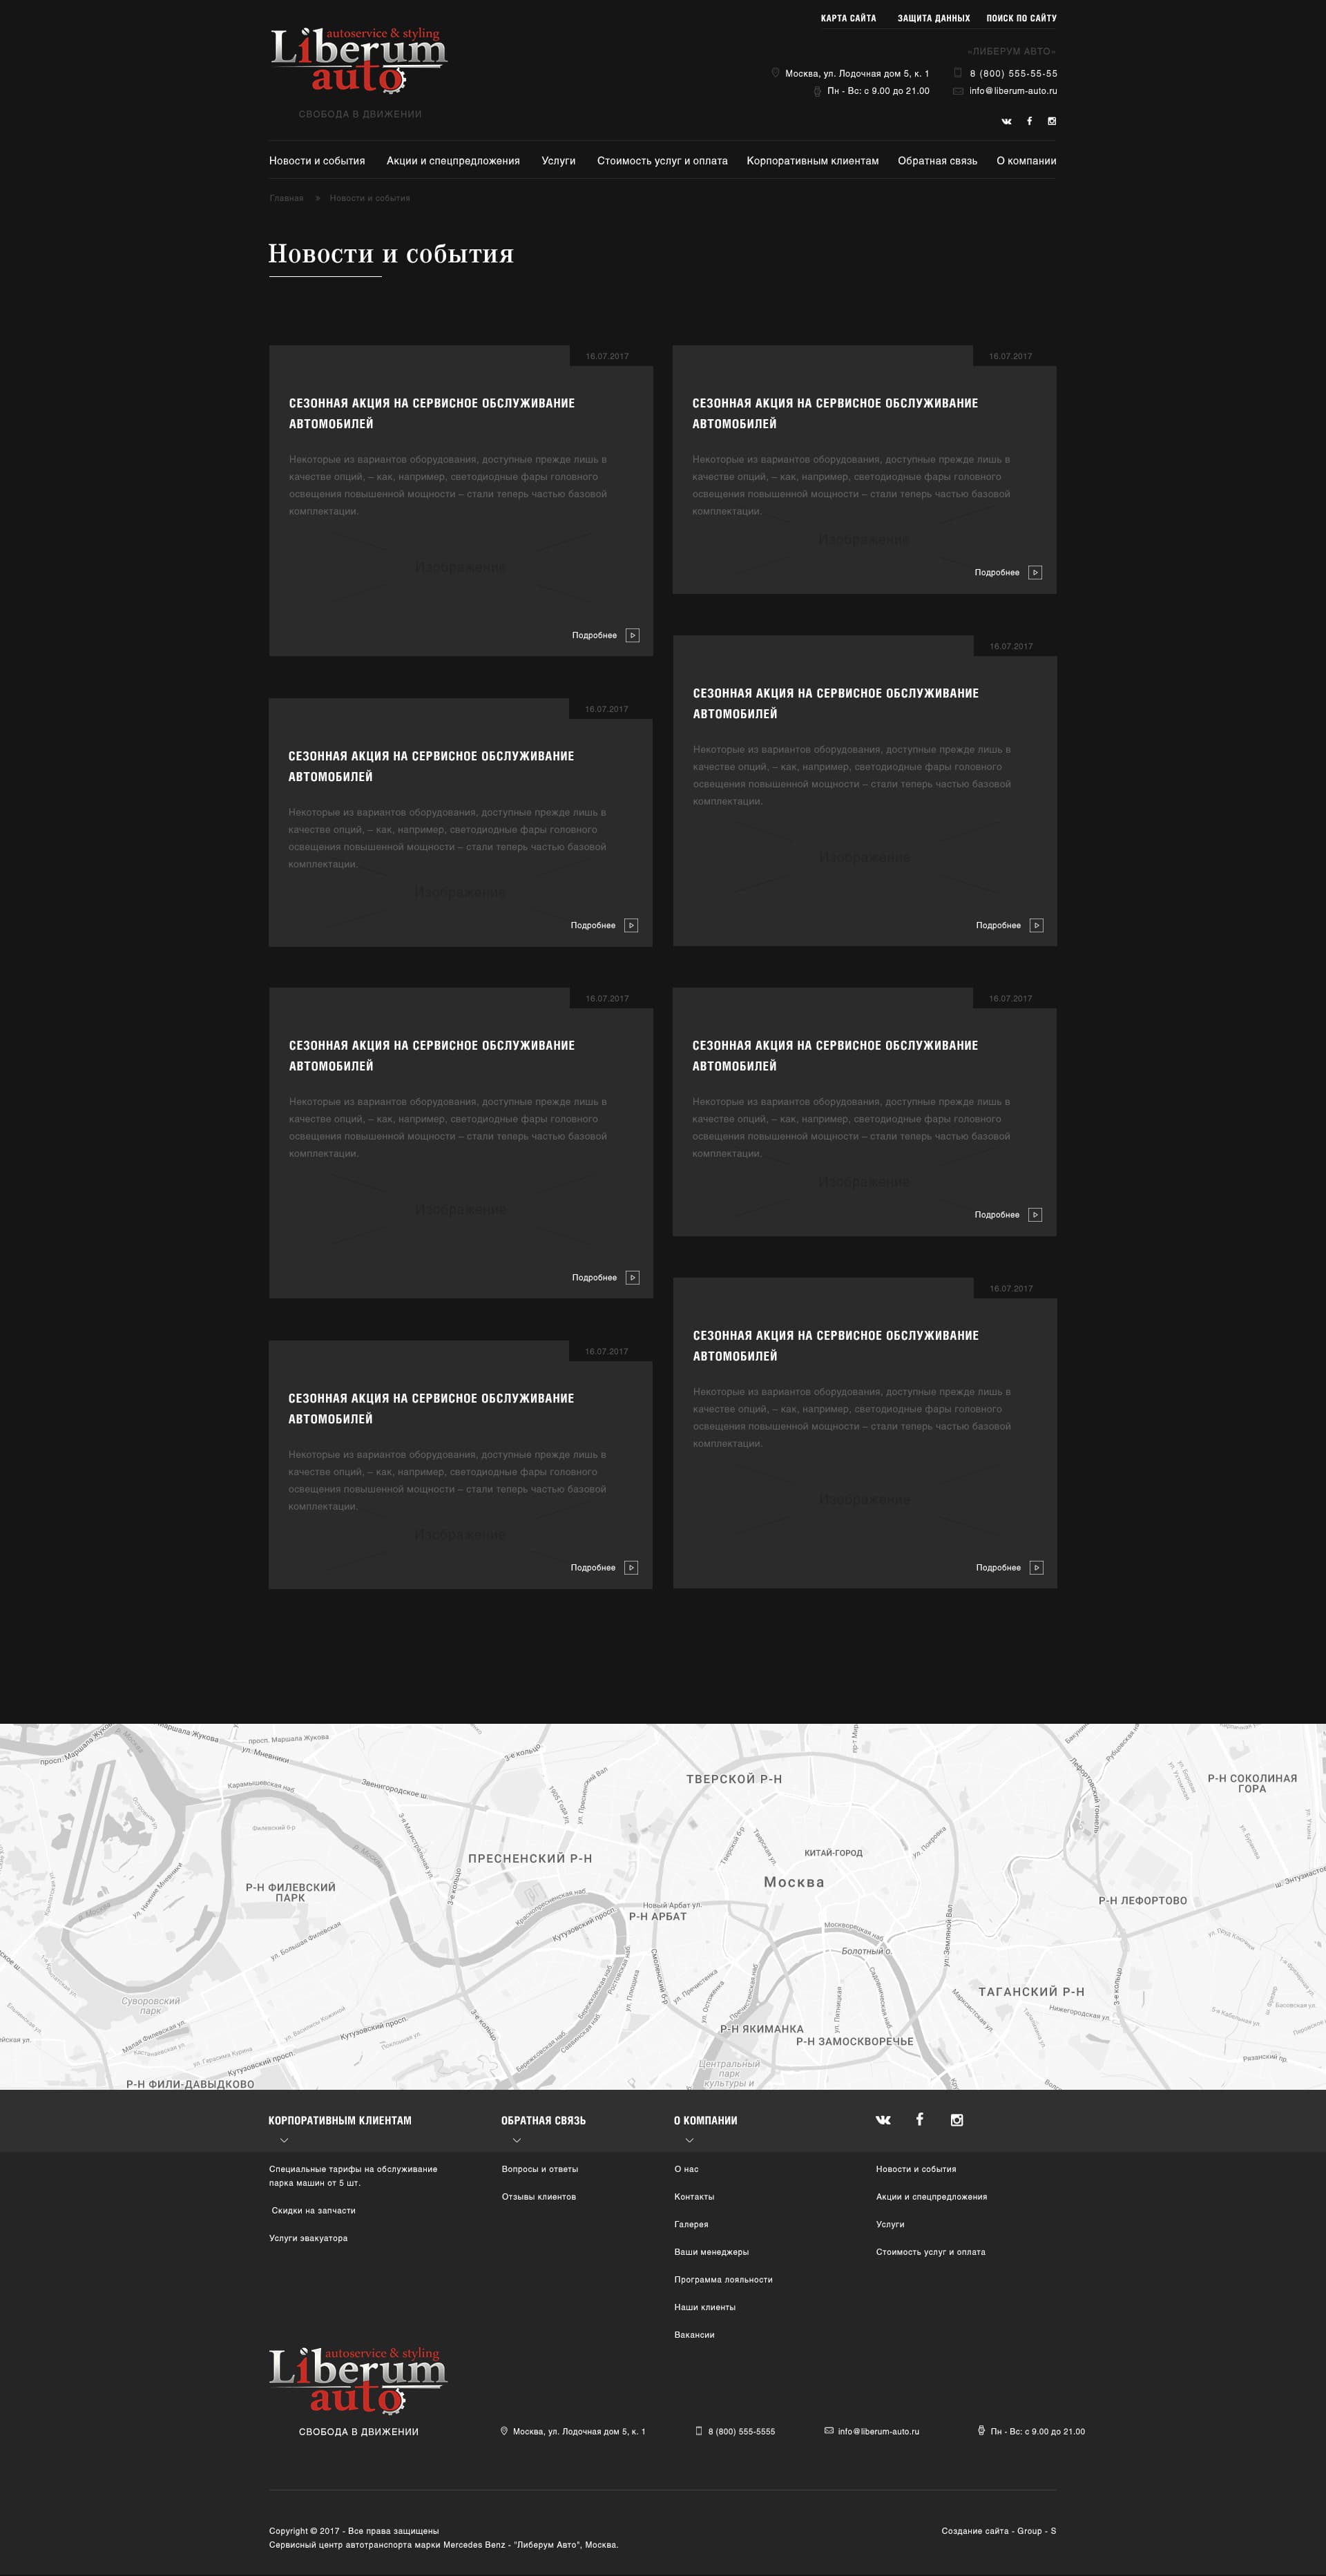 Индивидуальная разработка сайта для автосервиса Mercedes-Benz